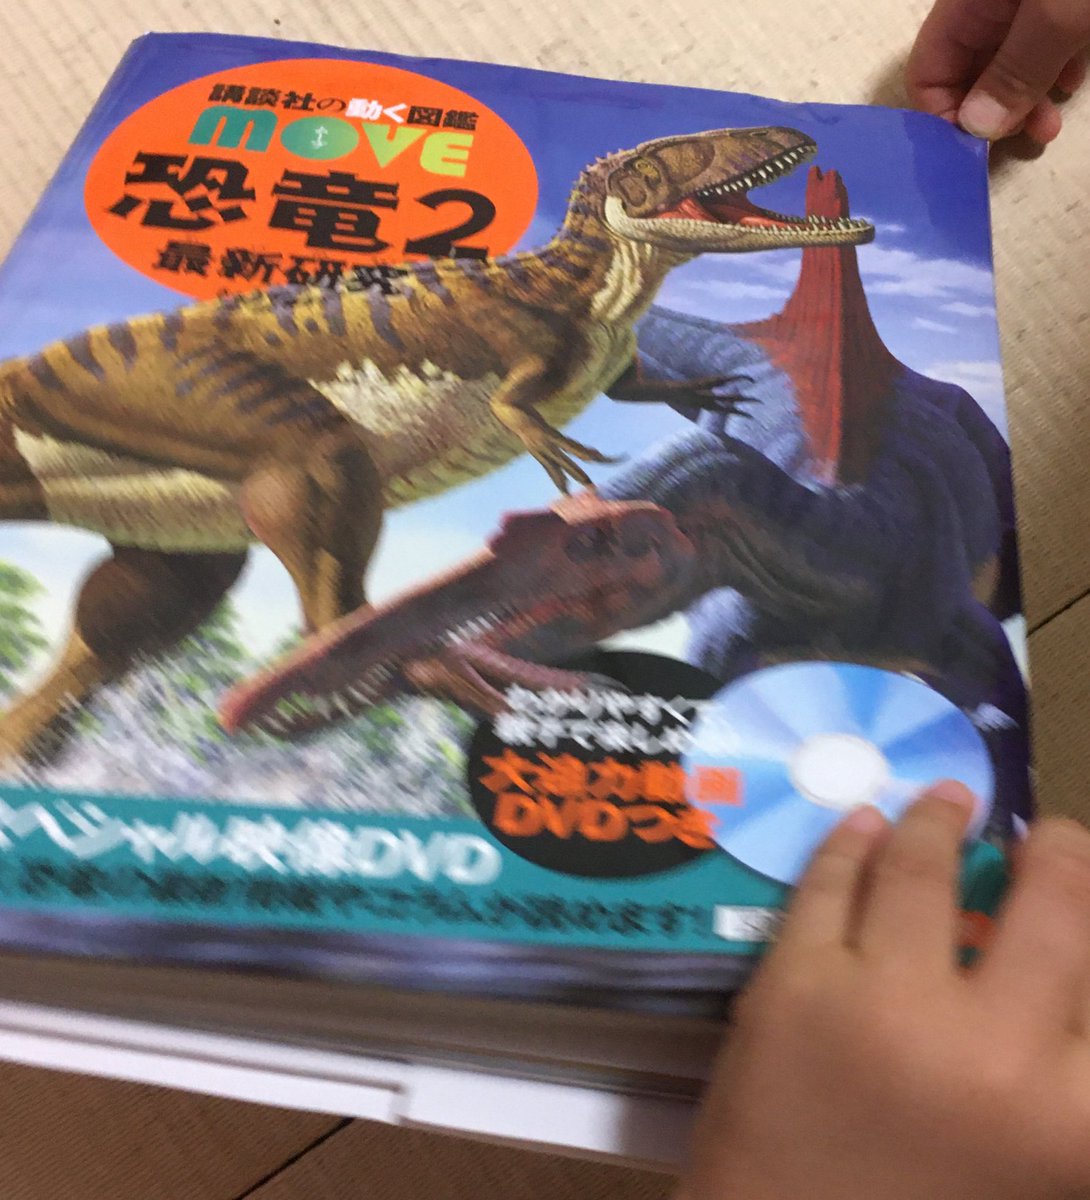 新しく買った恐竜図鑑に「ティラノサウルスはトリケラトプスの頭を引きちぎってから食べた説」が載ってて怖くて泣いた。 